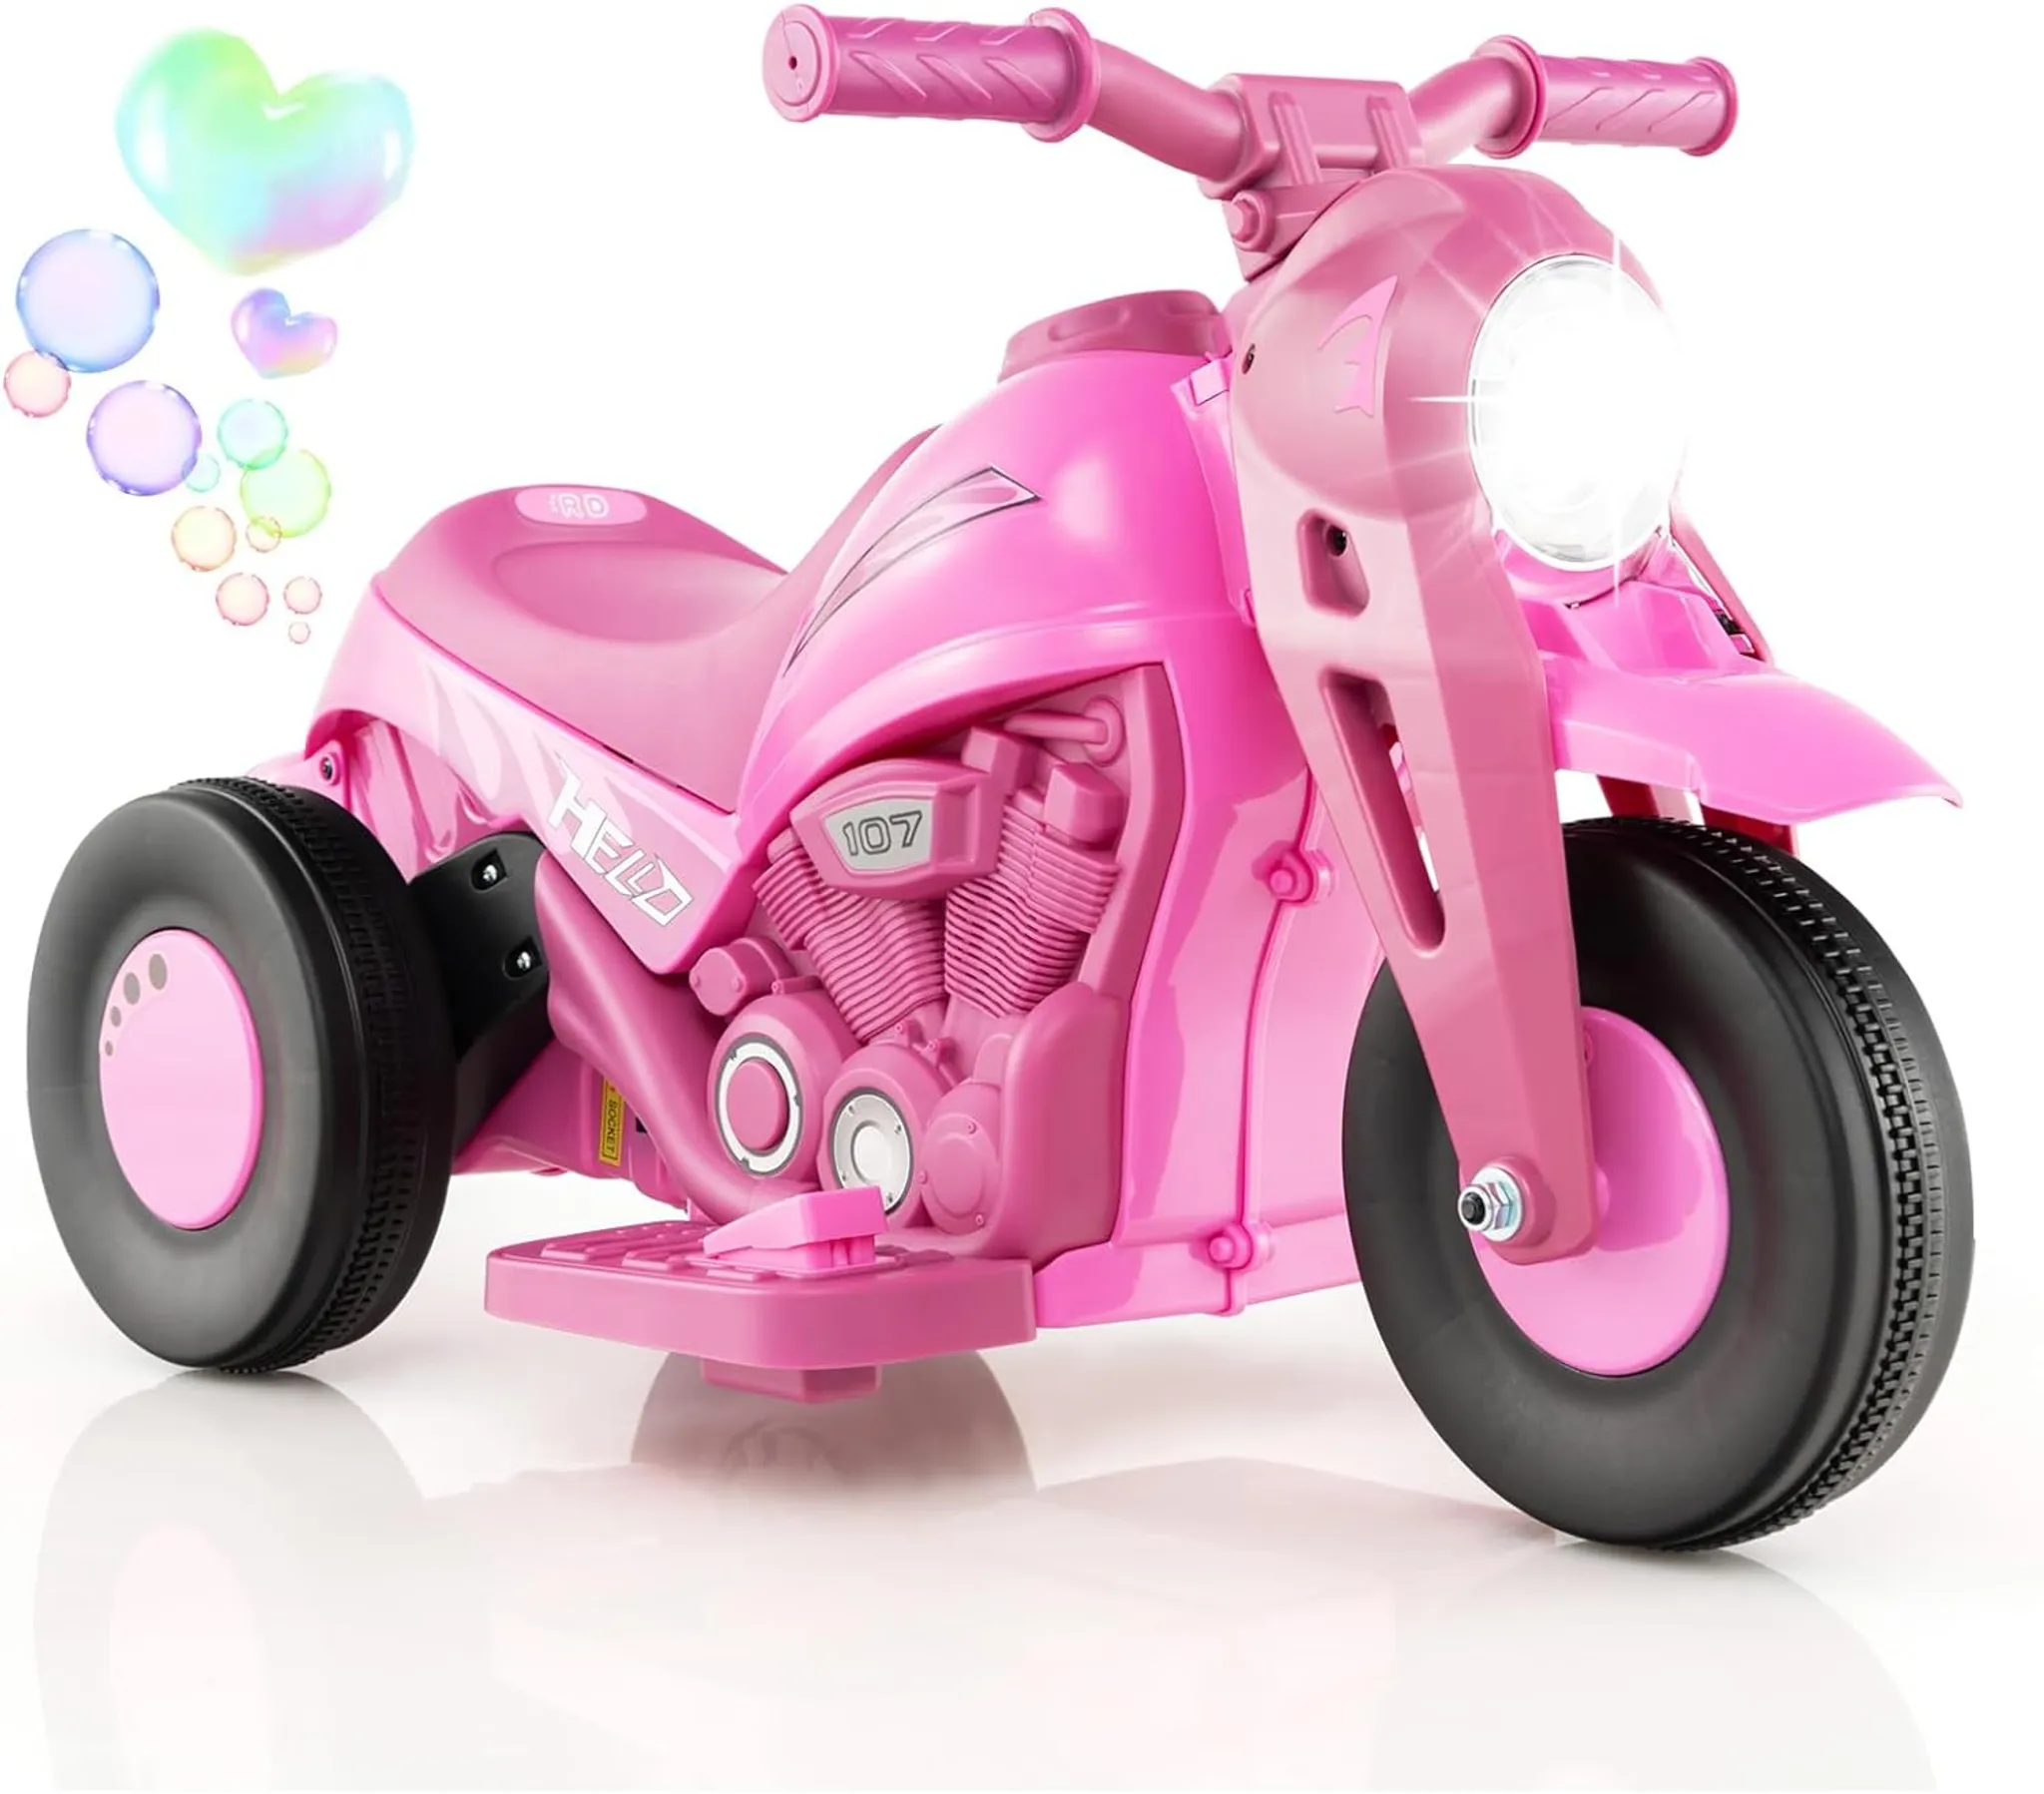 COSTWAY Kinder Motorrad, mit Seifenblasenmaschine, 6V Elektro Motorrad mit  Musik und LED Scheinwerfer, Dreirad Kindermotorrad 2,5-3 km/h, für Kinder  ab 3 Jahre (Rosa)